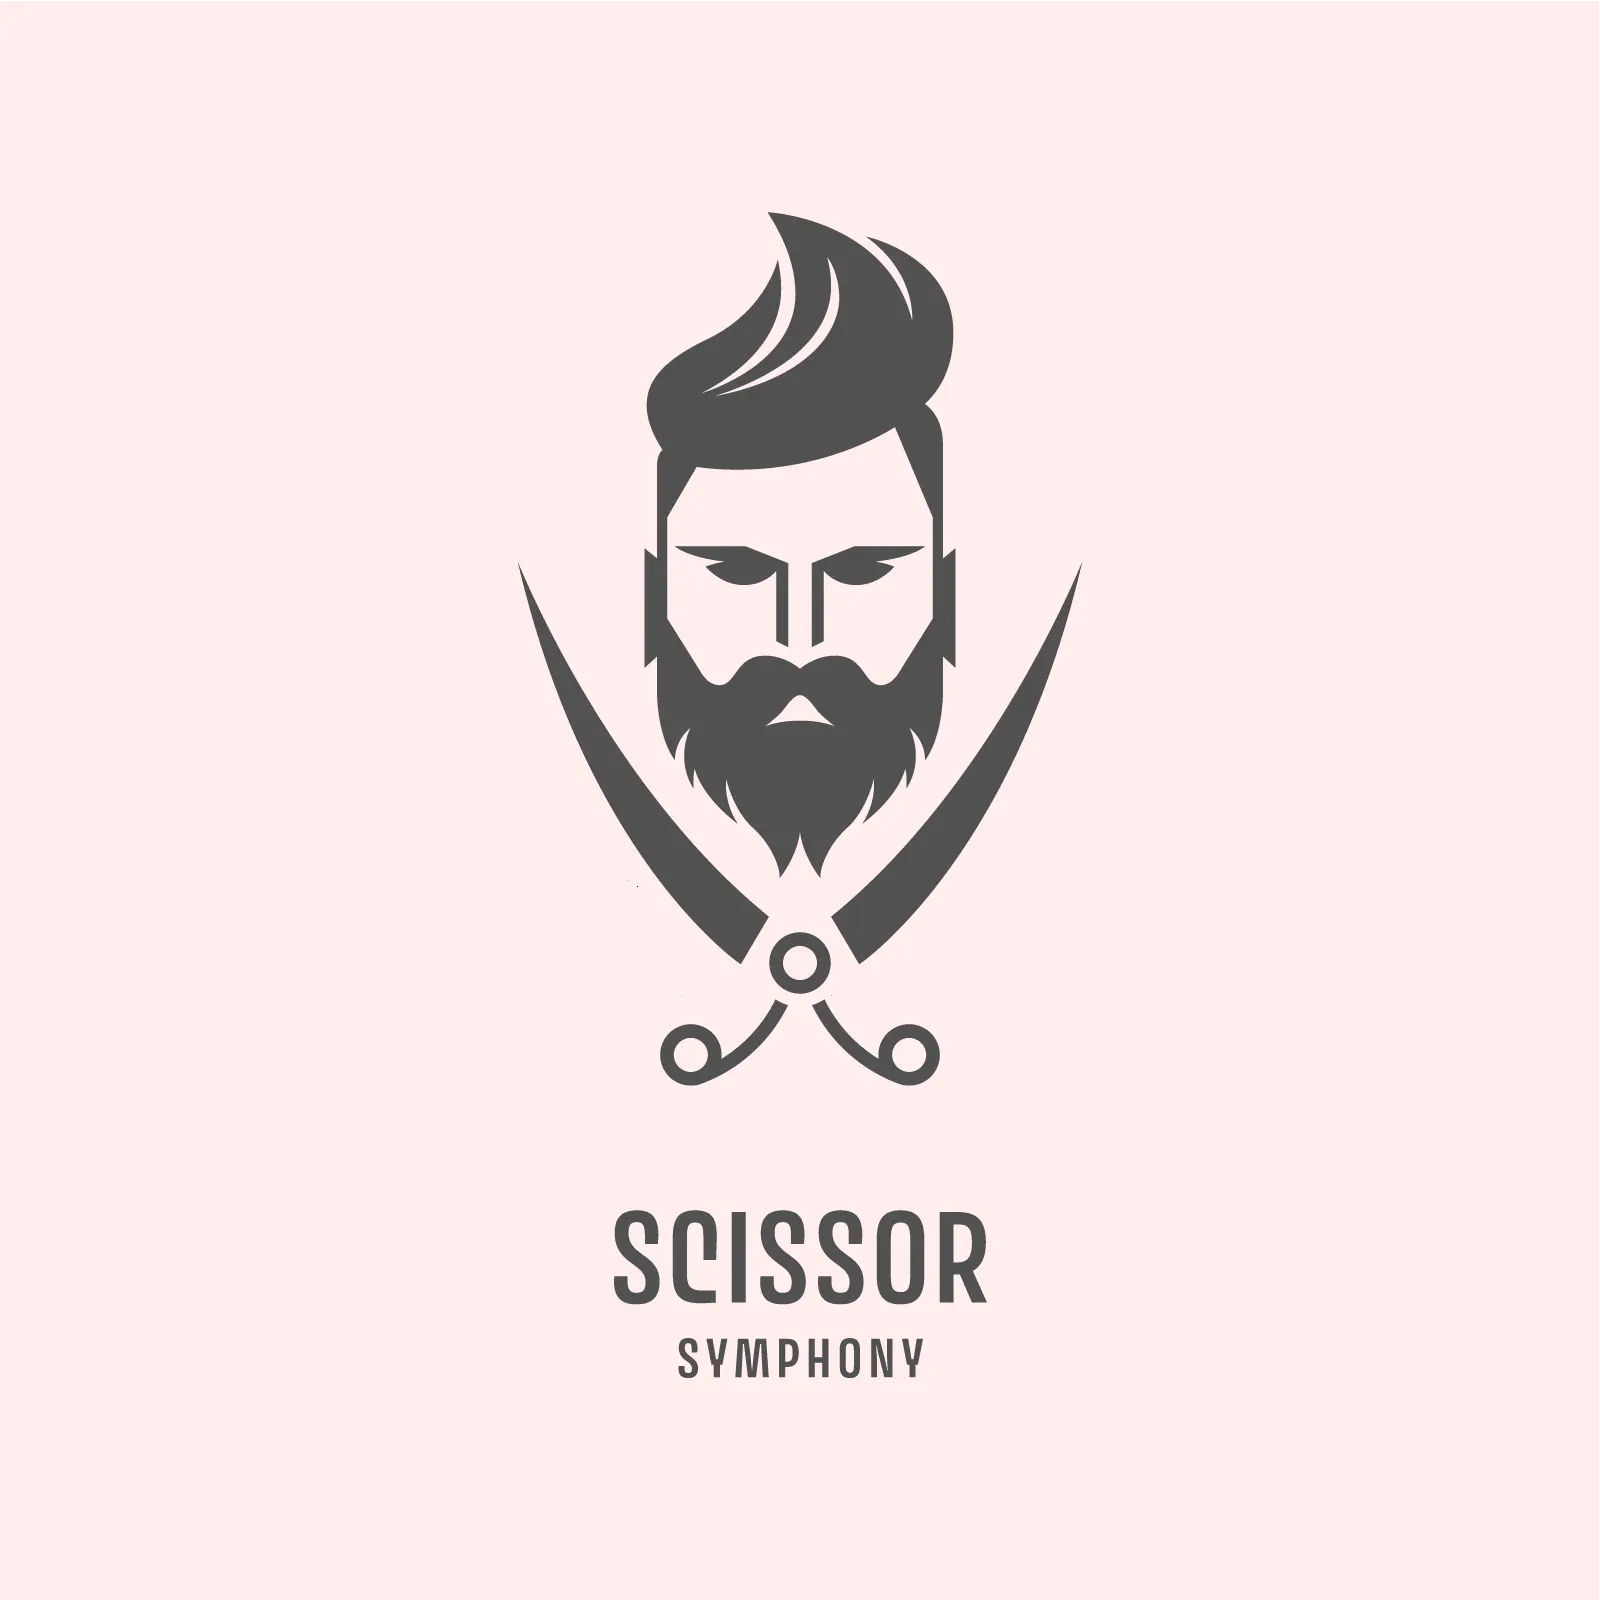 Scissor symphony, modern barber shop logo